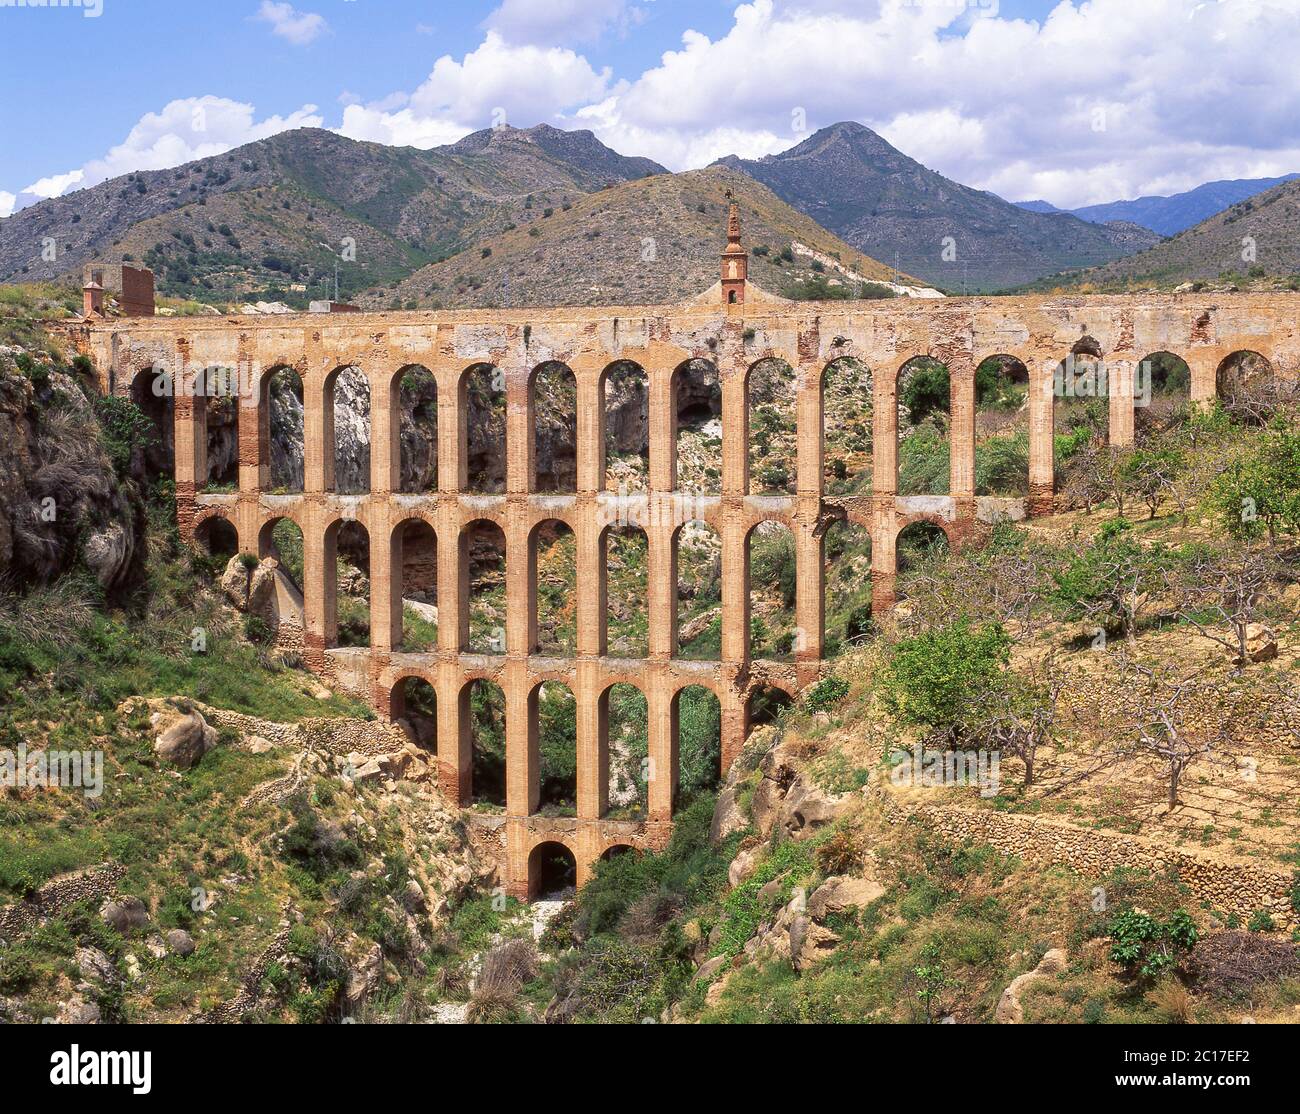 Puente del Aguila, Maro, Costa del Sol, Malaga Province, Andalusia, Spain Stock Photo